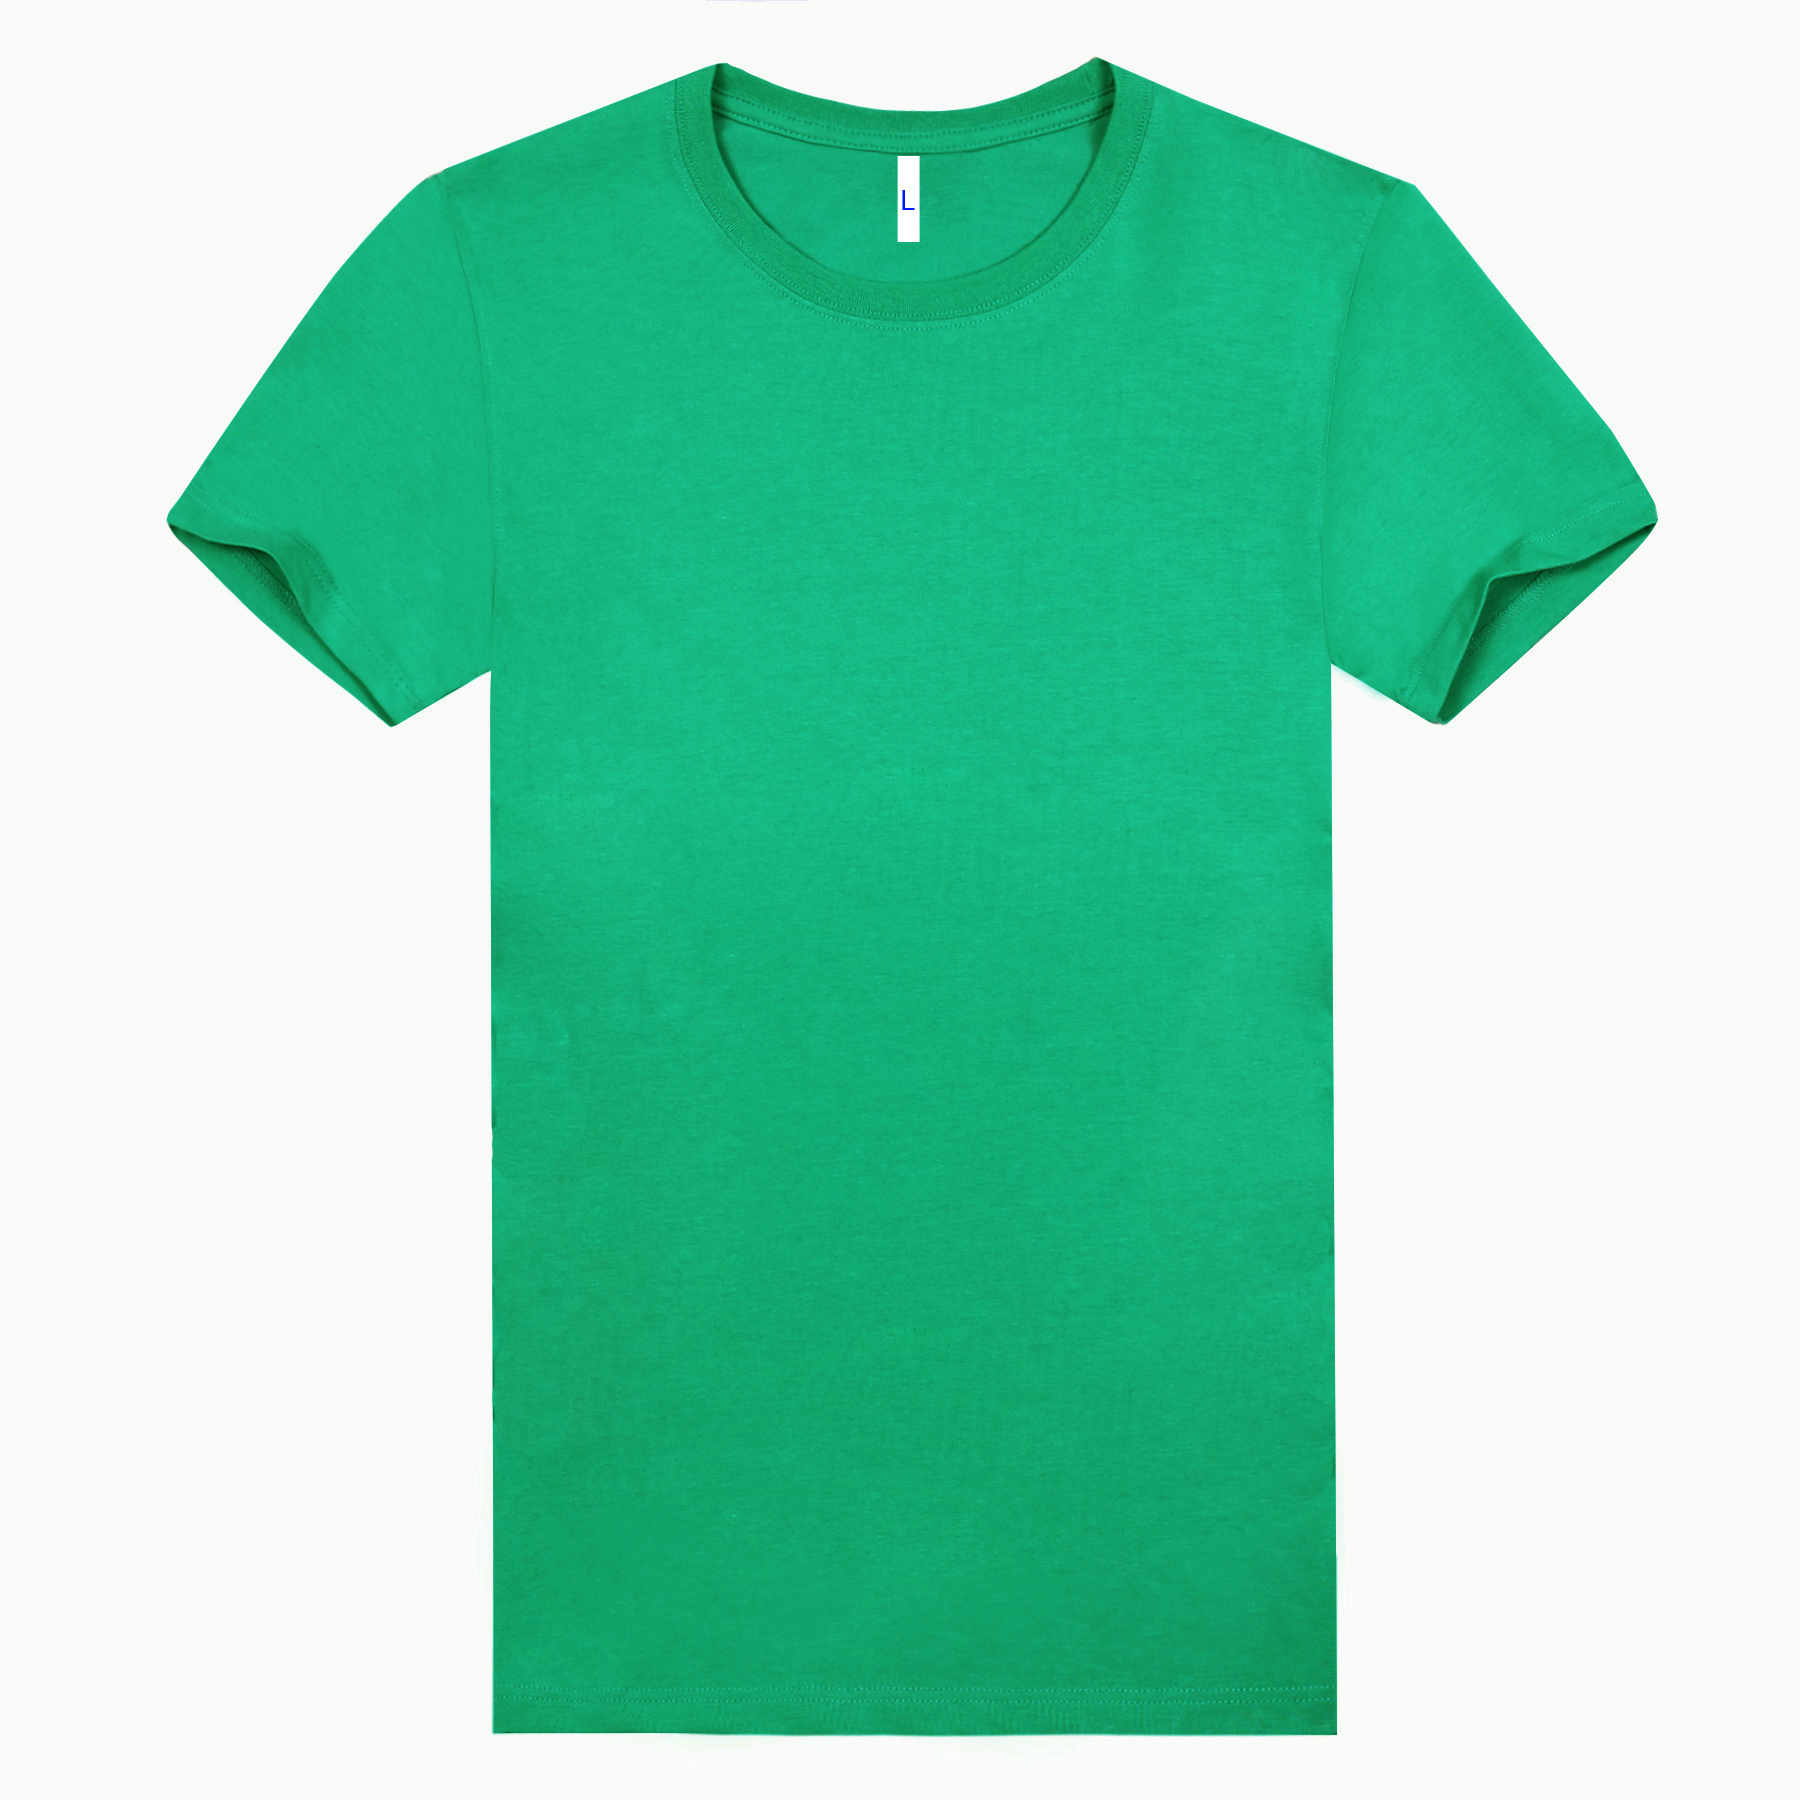 新款200g纤维棉草绿色文化衫